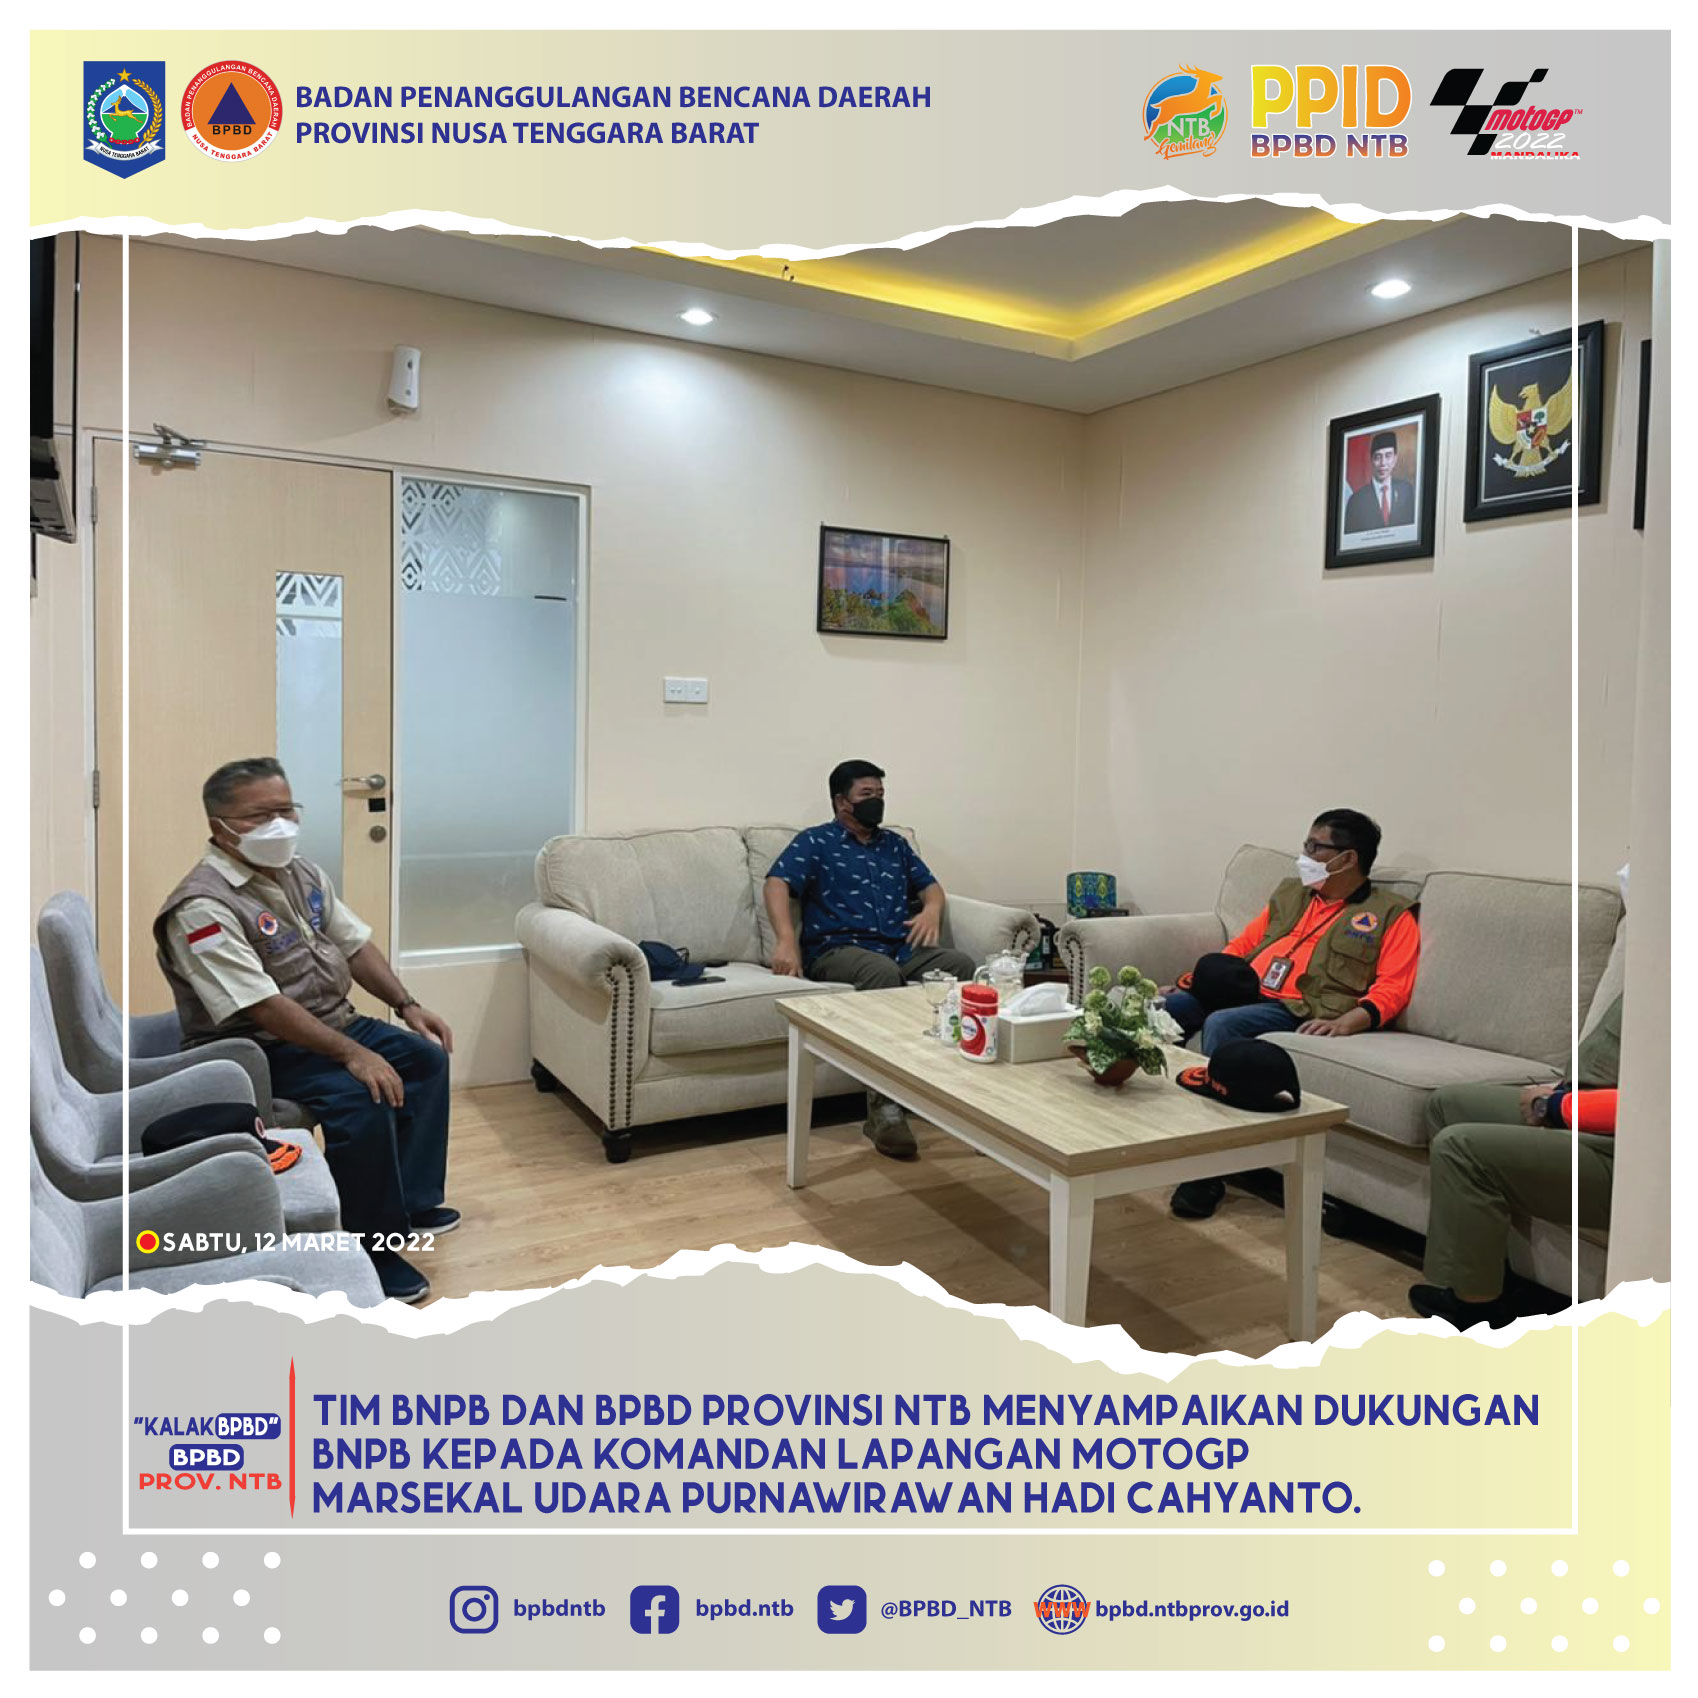 Tim BNPB dan BPBD Provinsi NTB menyampaikan dukungan BNPB kepada Komandan Lapangan MotoGP Marsekal Udara Purnawirawan Hadi Cahyanto (Sabtu, 12 Maret 2022)